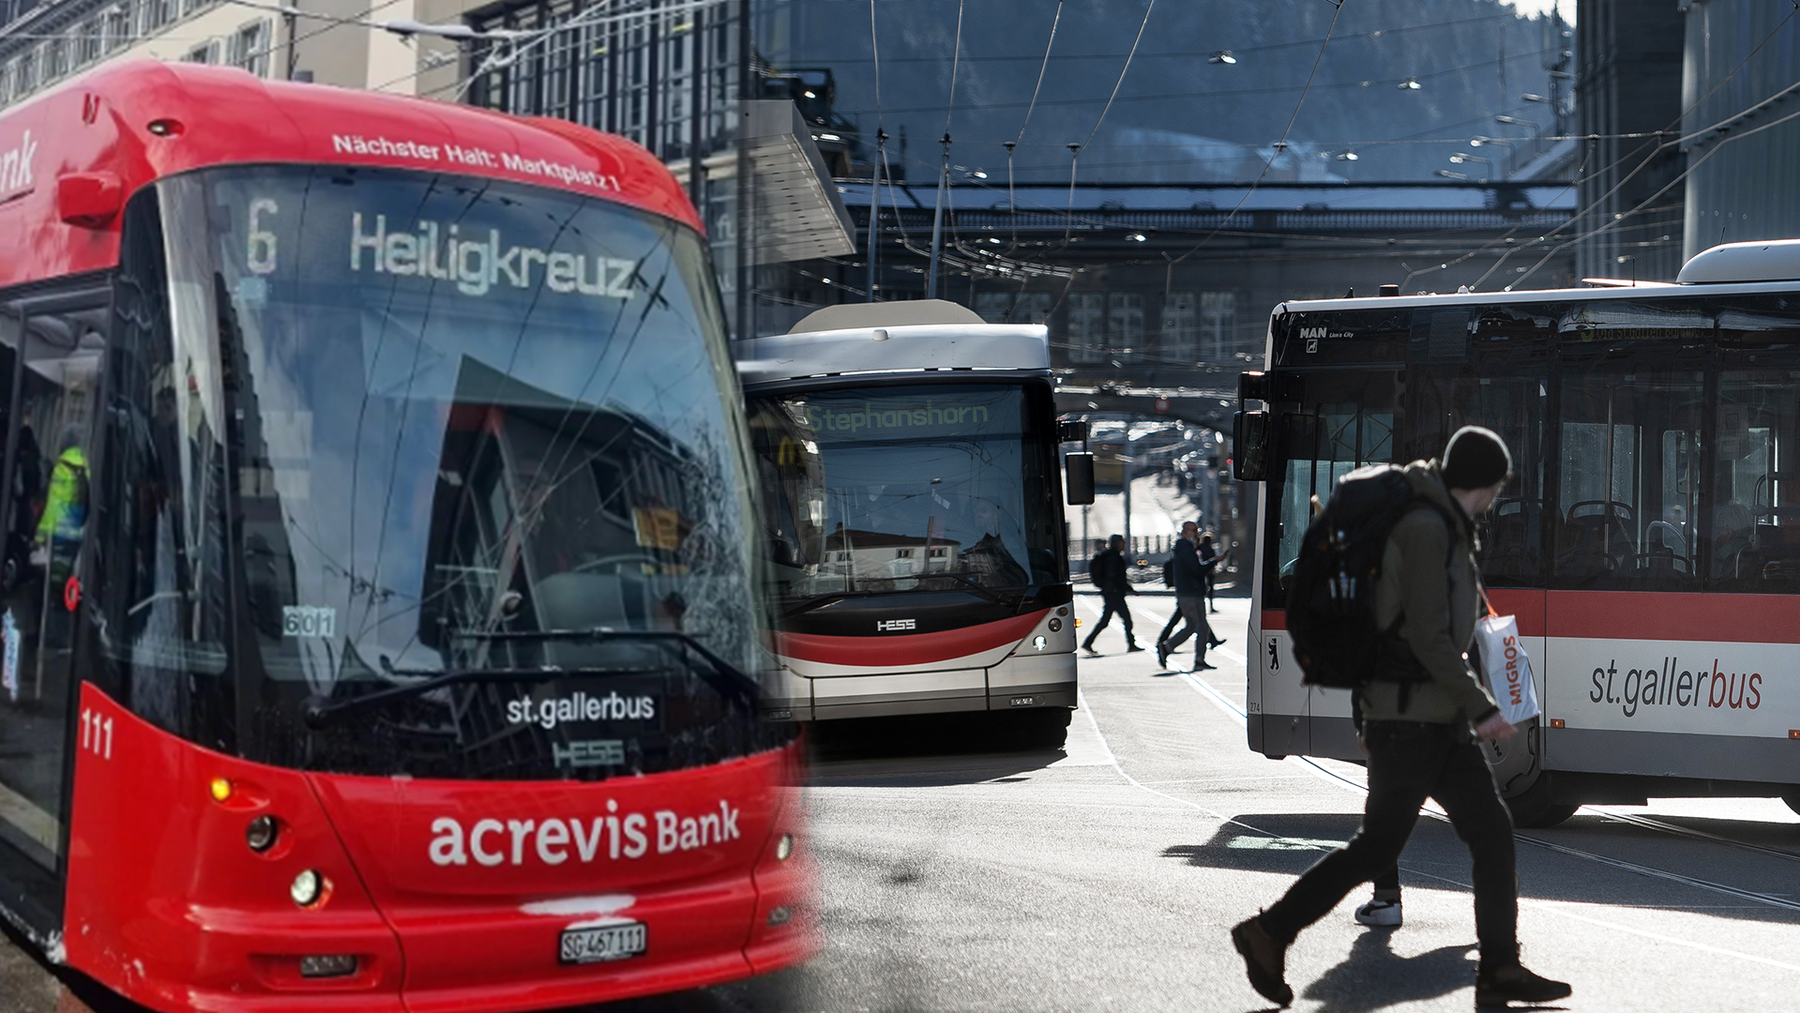 Während einem Jahr wird der Bus statt in den Farben der Stadt St.Gallen in knallrot unterwegs sein.